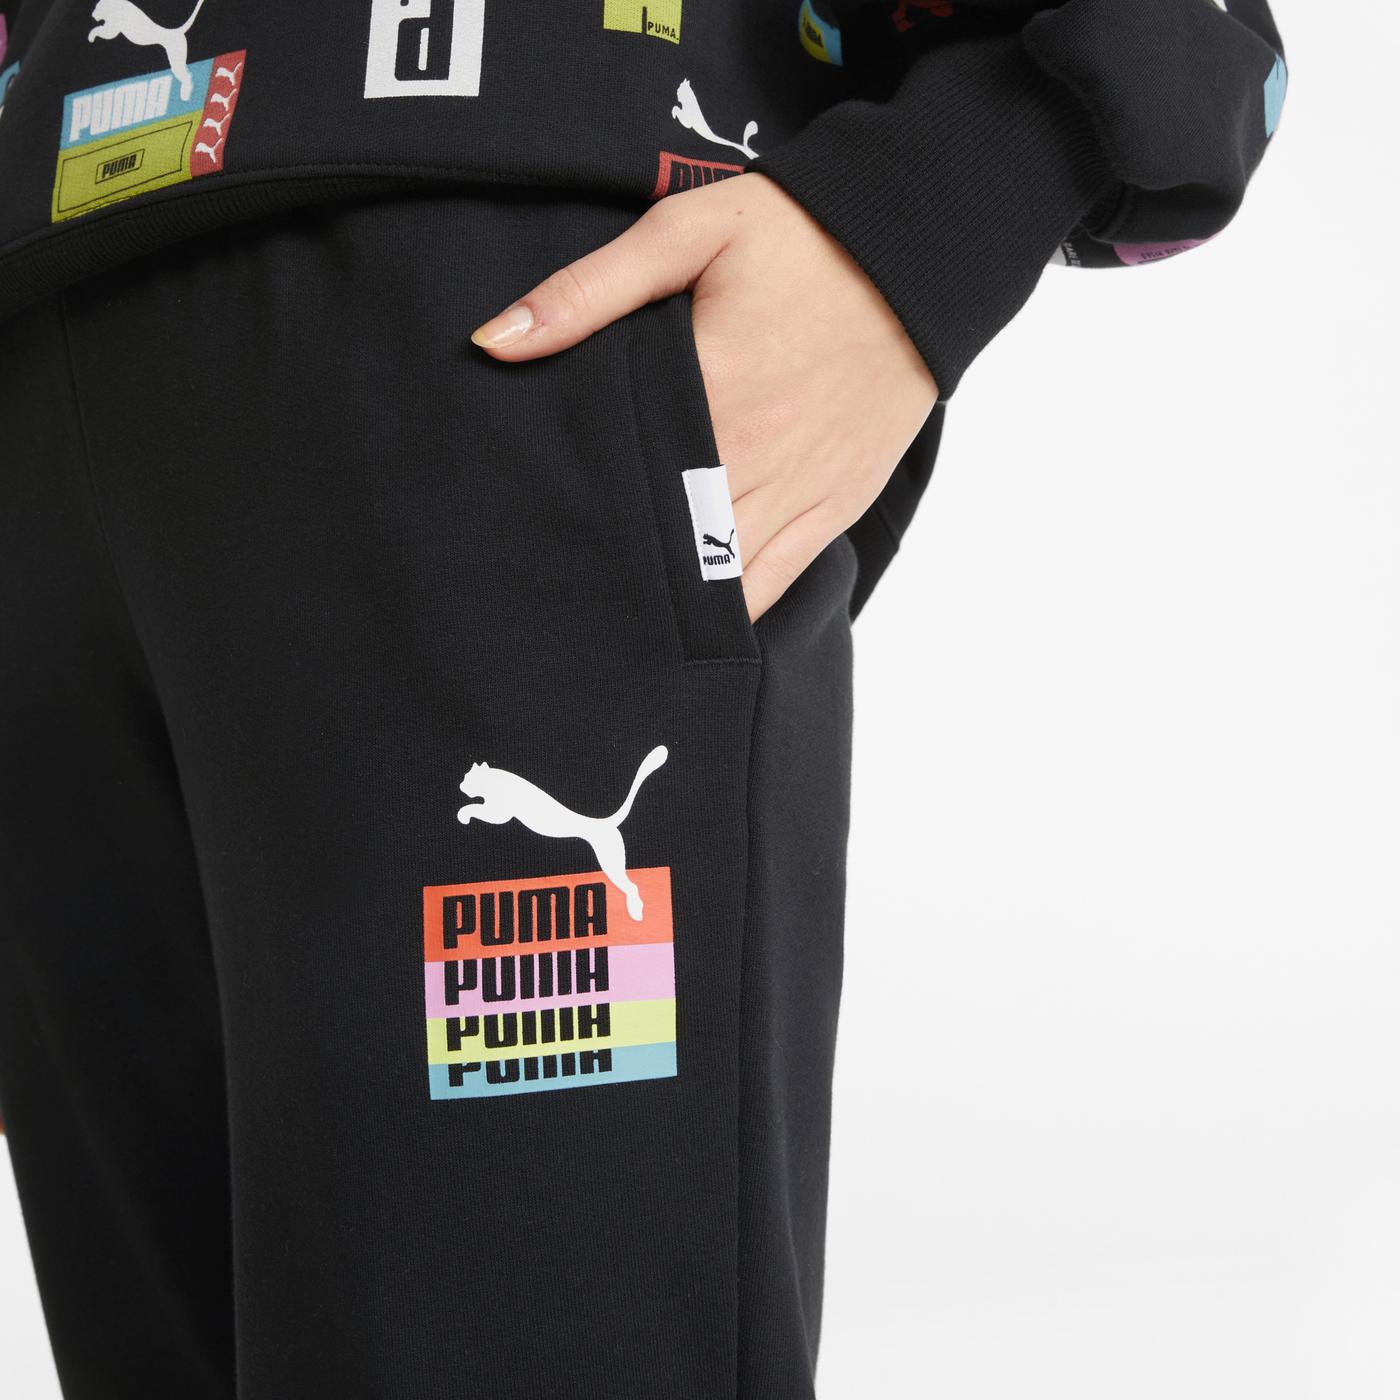 Puma Brand Love Kadın Siyah Eşofman Altı